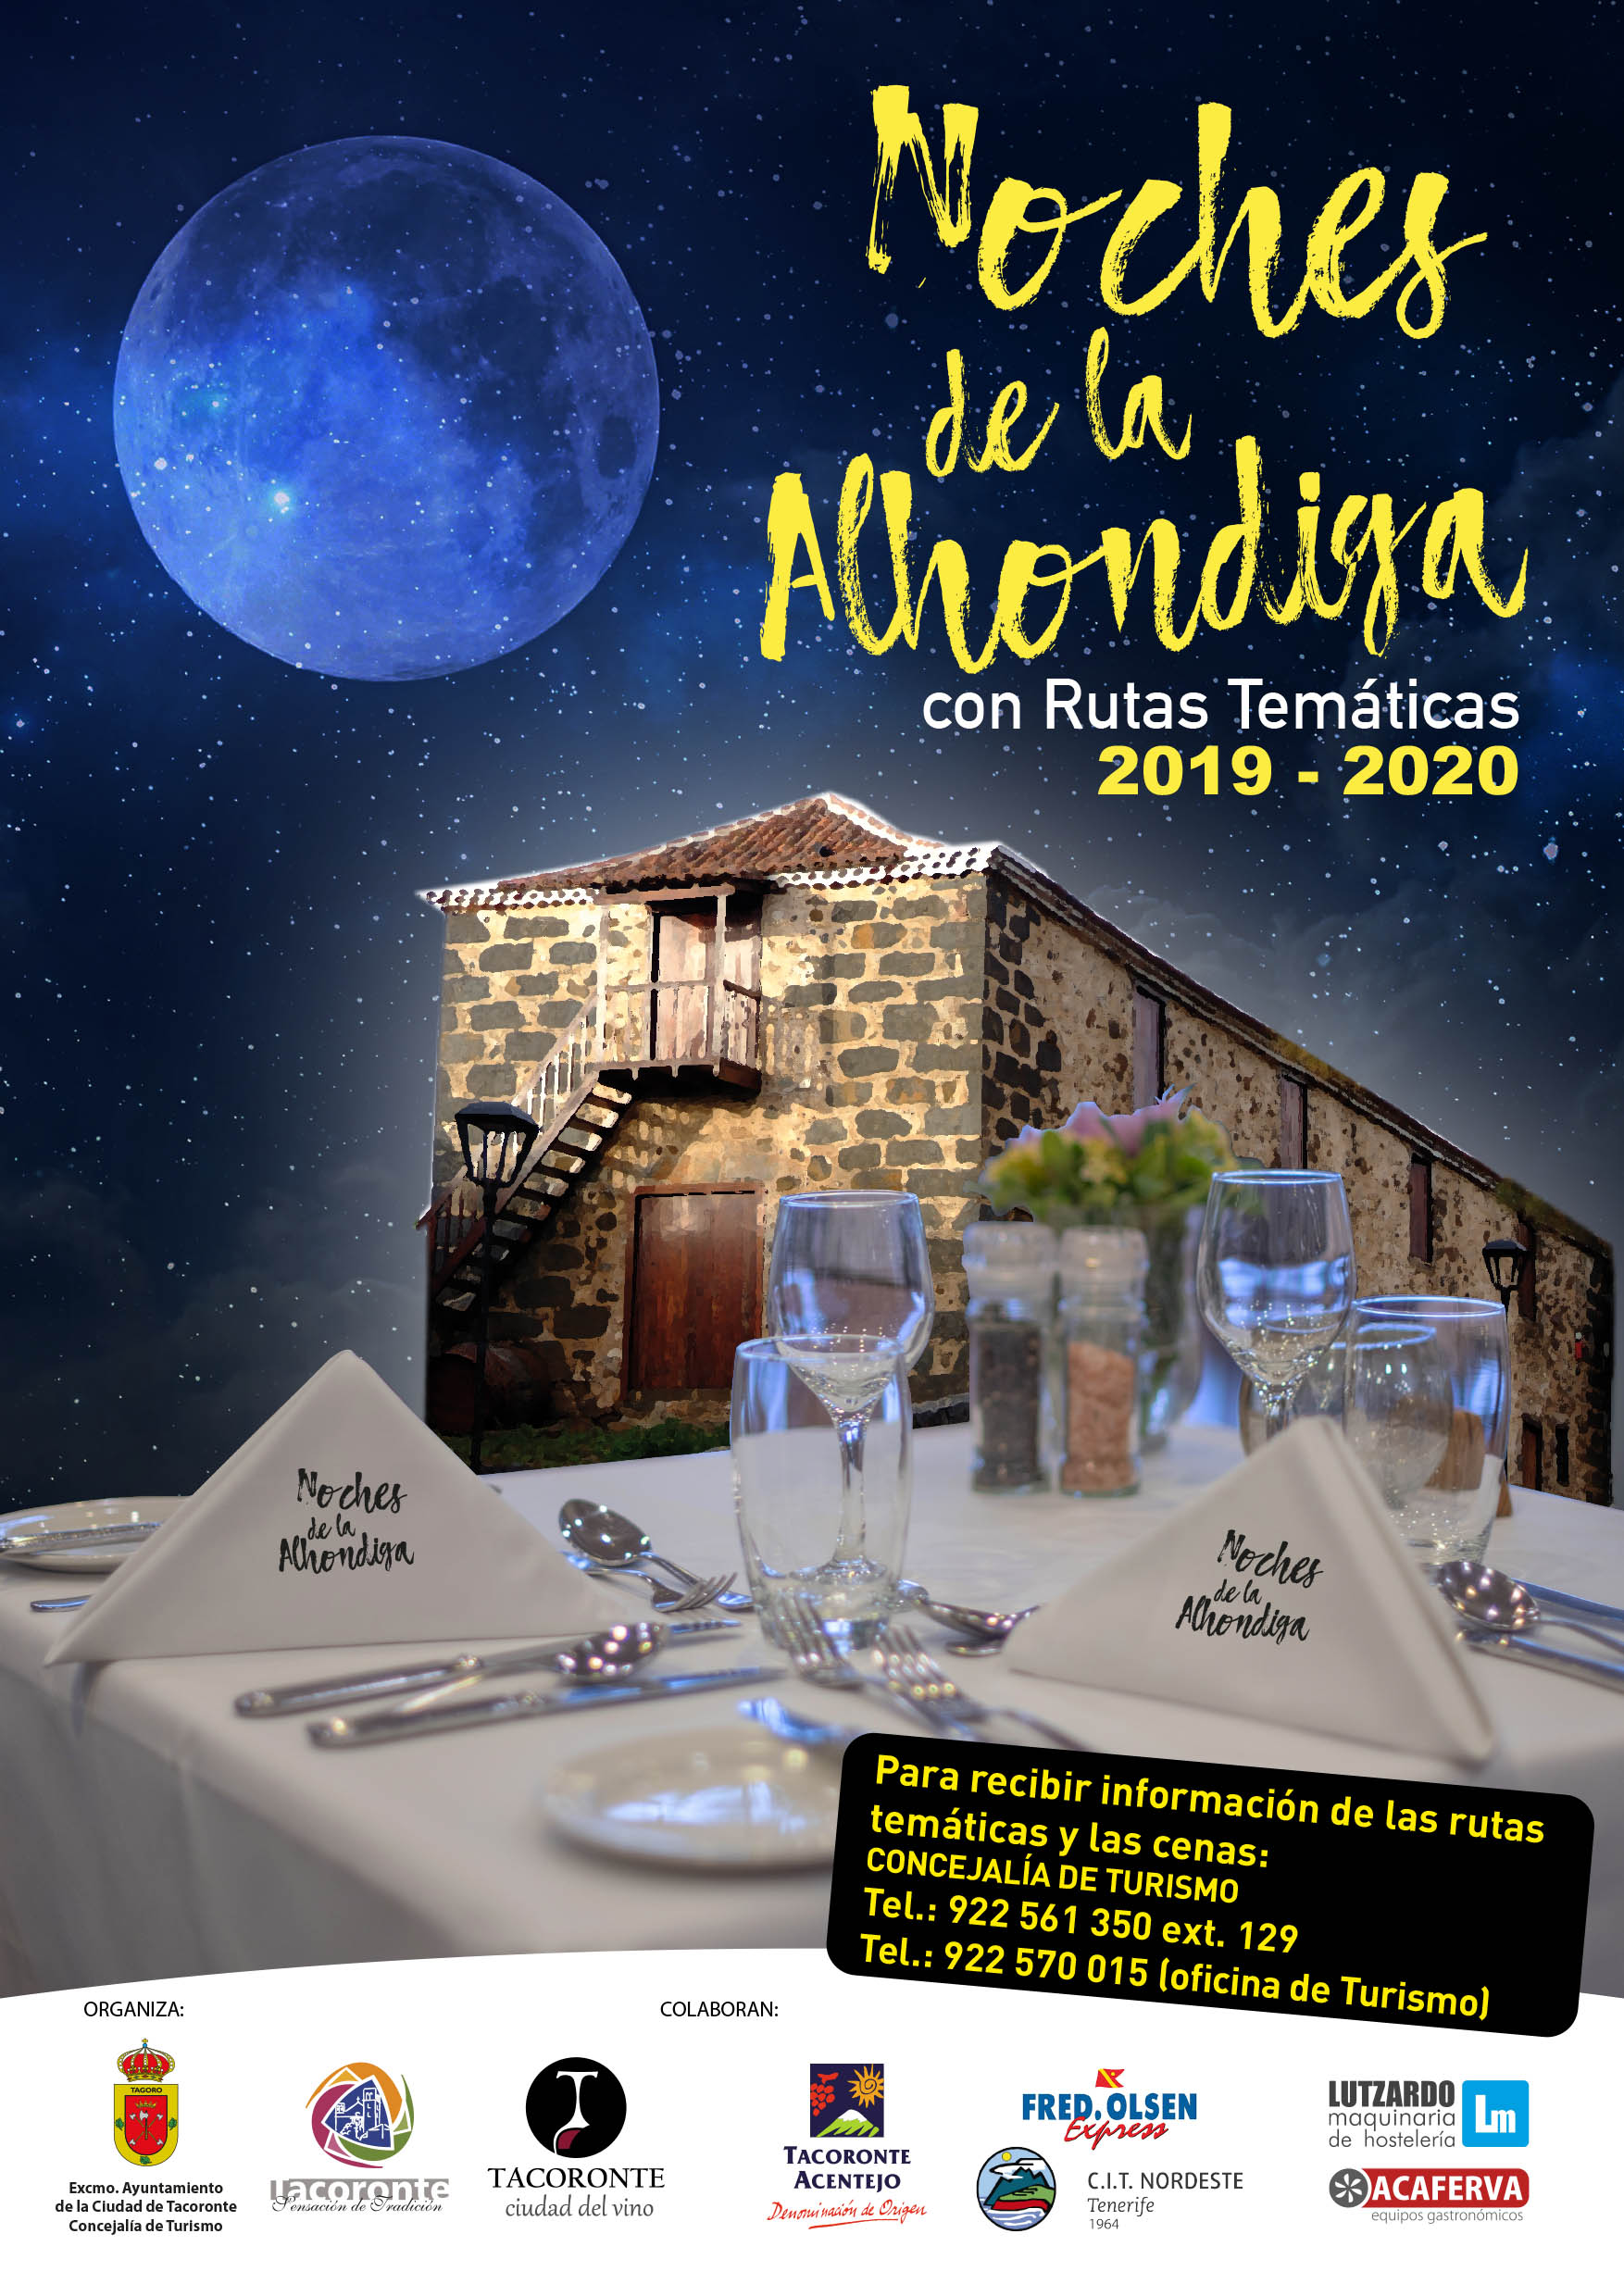 Marba será la bodega protagonista de la próxima jornada de Noches de La Alóndiga, en el municipio de Tacoronte, el jueves 12 de marzo de 2020